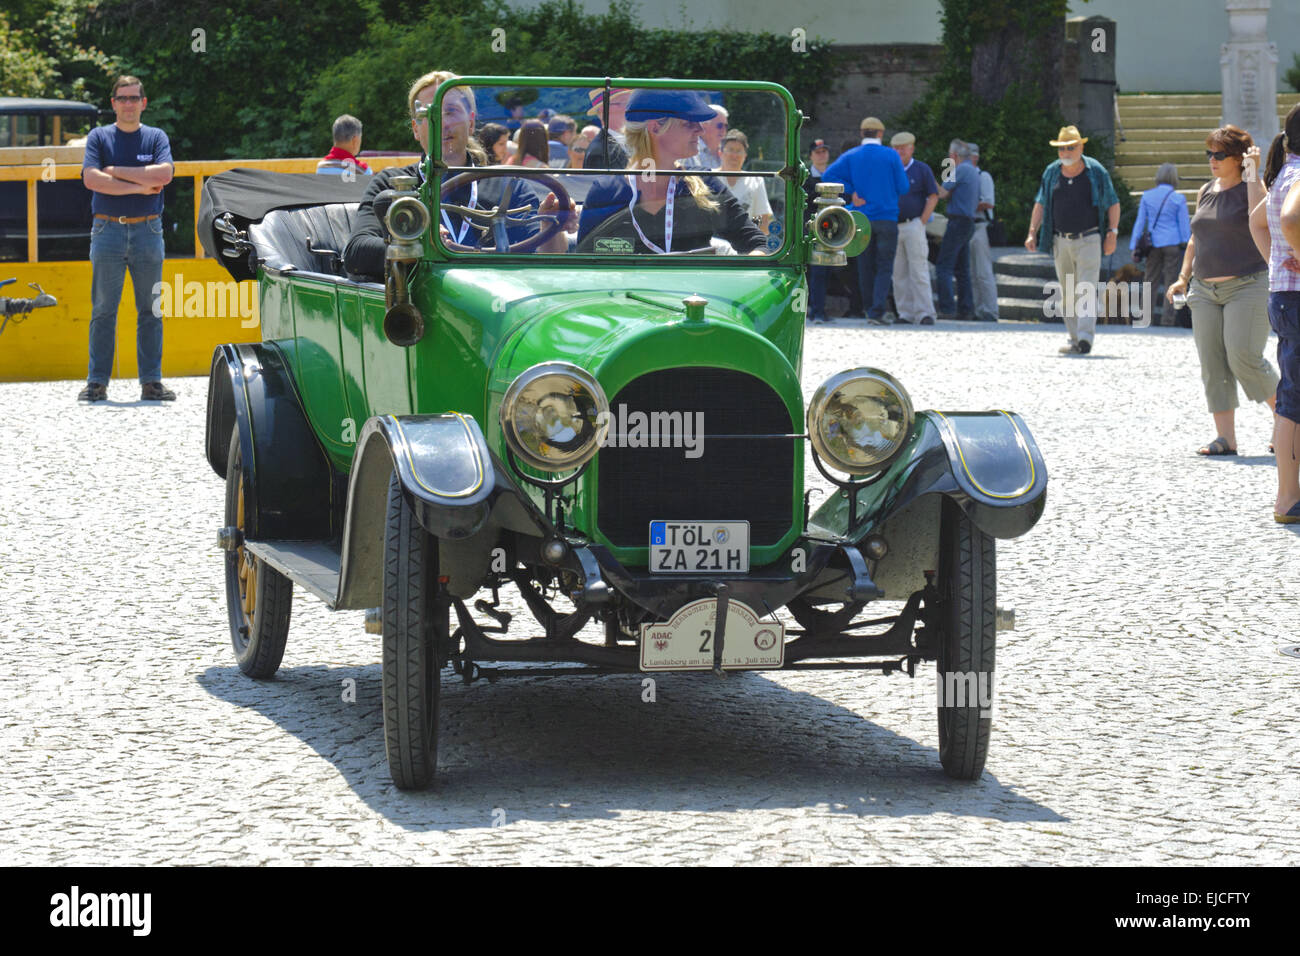 Oldtimer rally per antiche automobili classiche Foto Stock